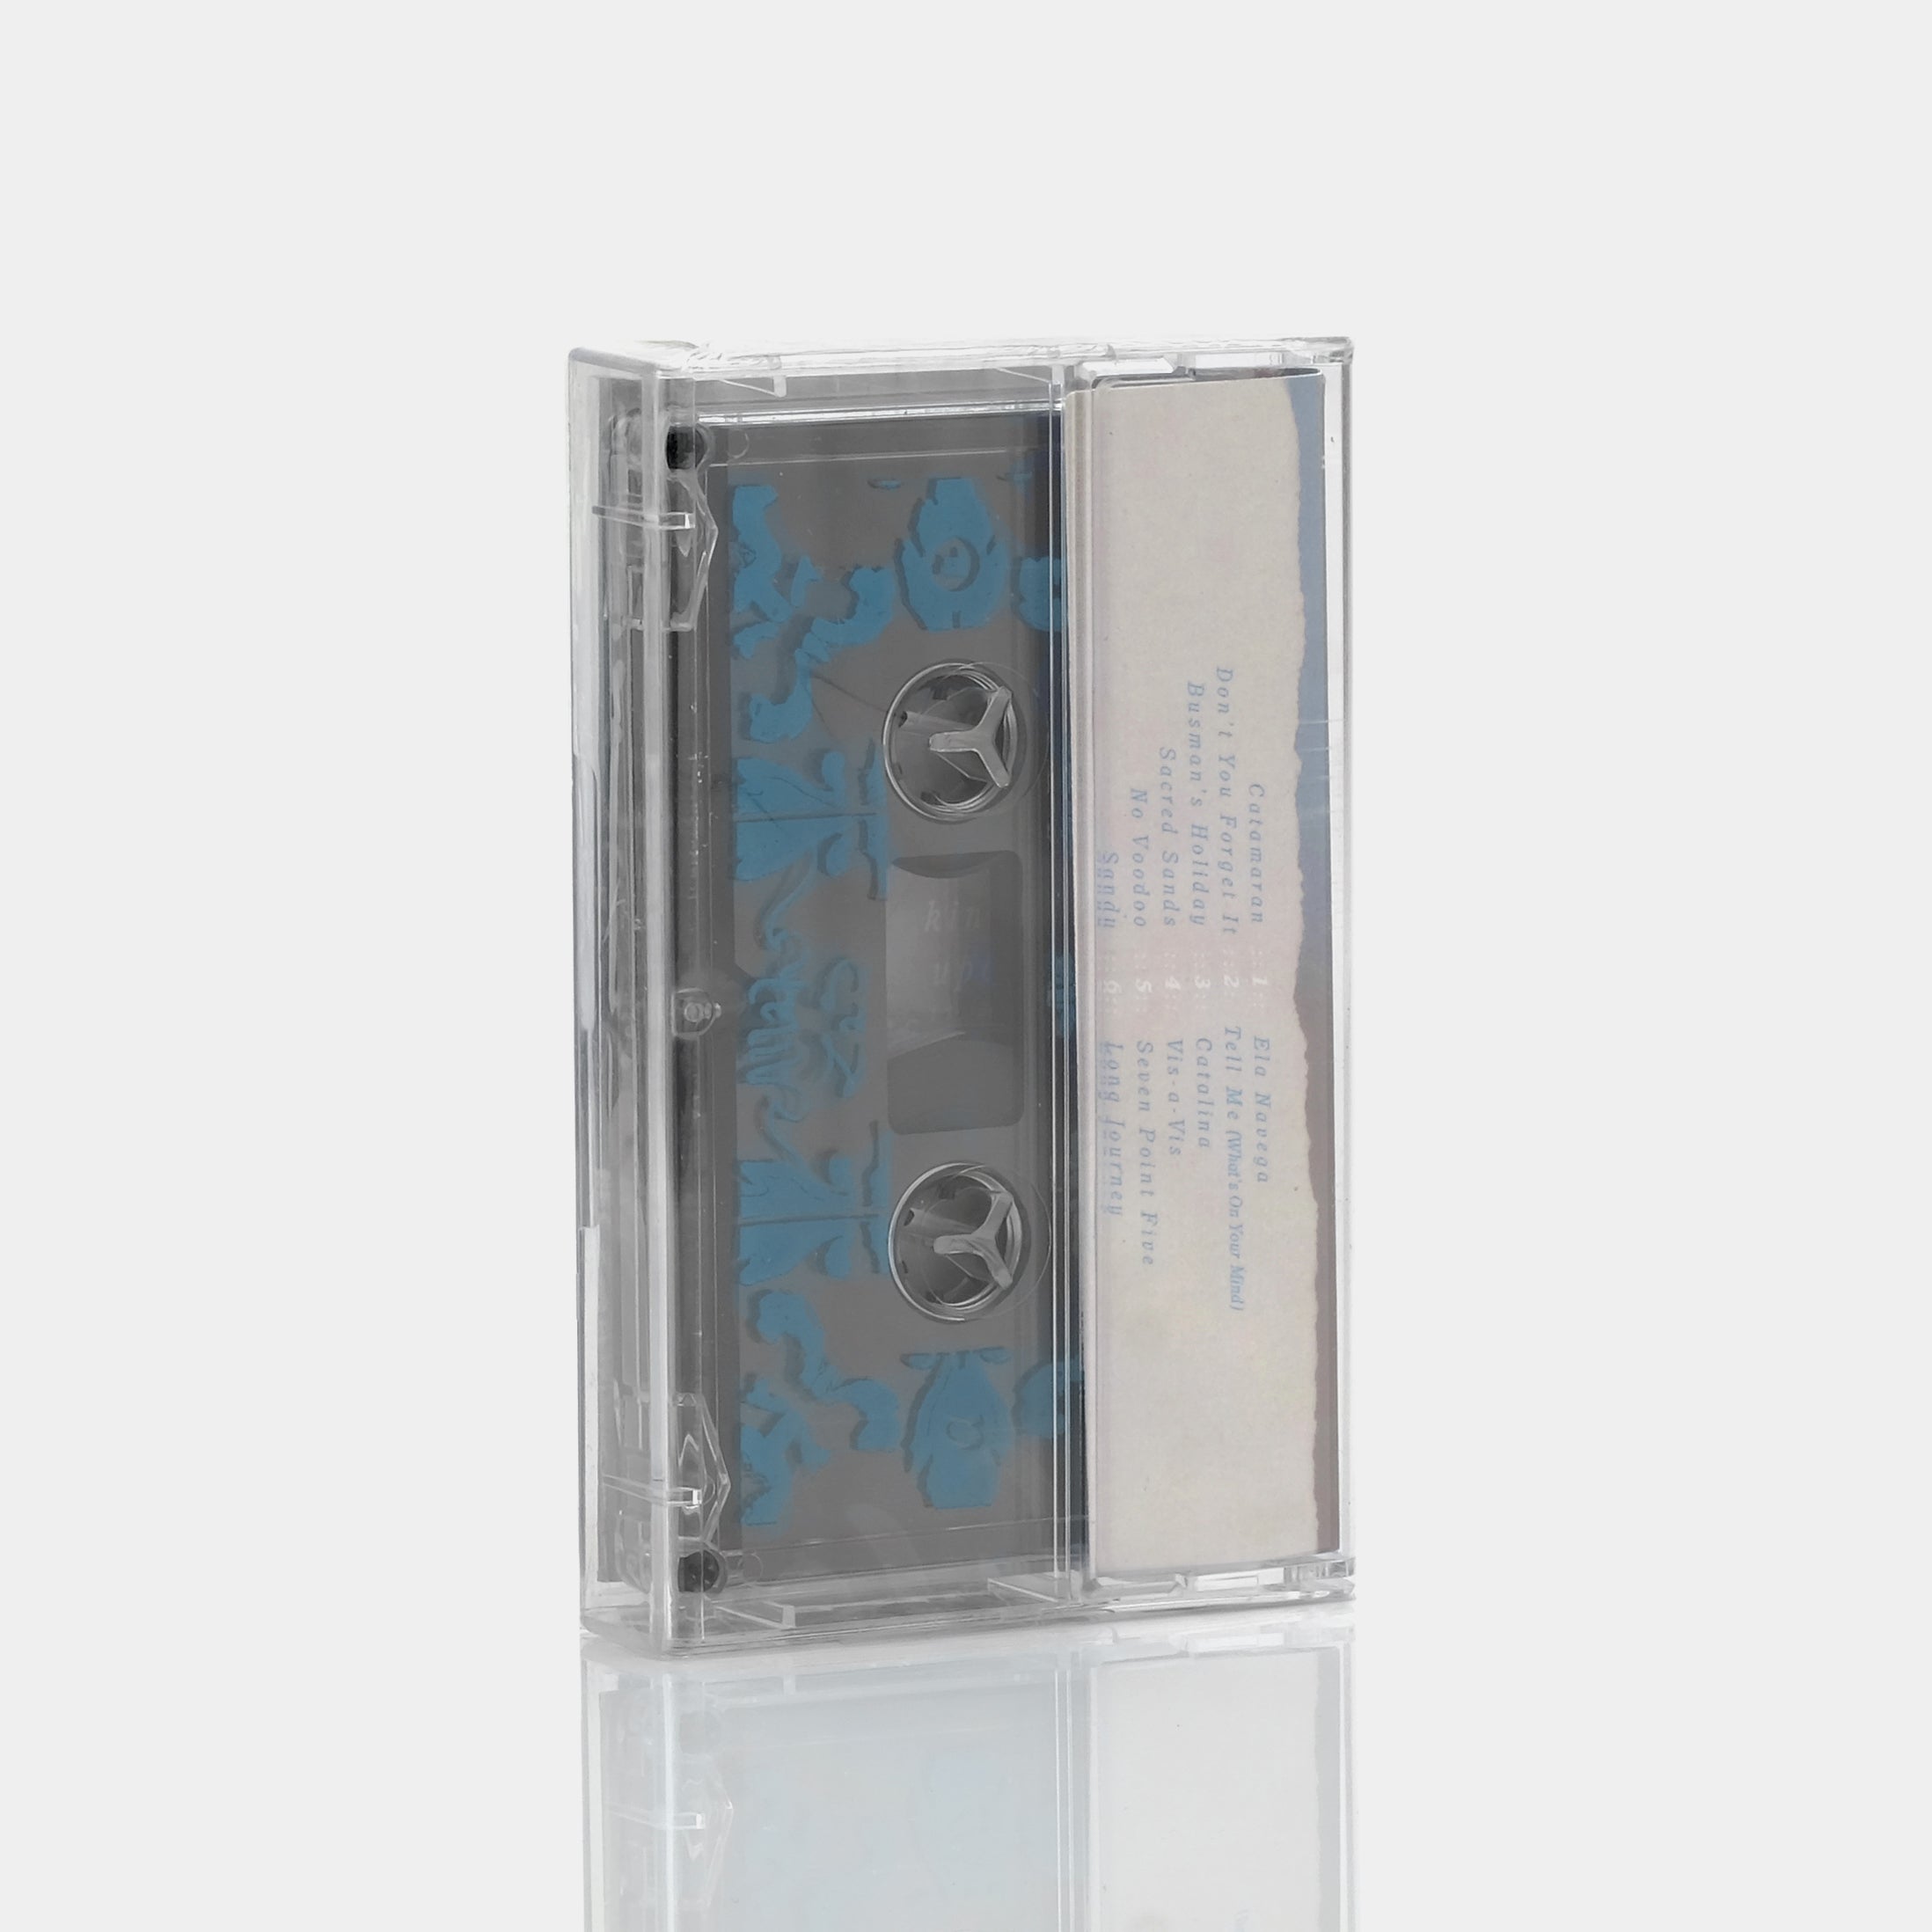 Allah-Las - Allah-Las Cassette Tape